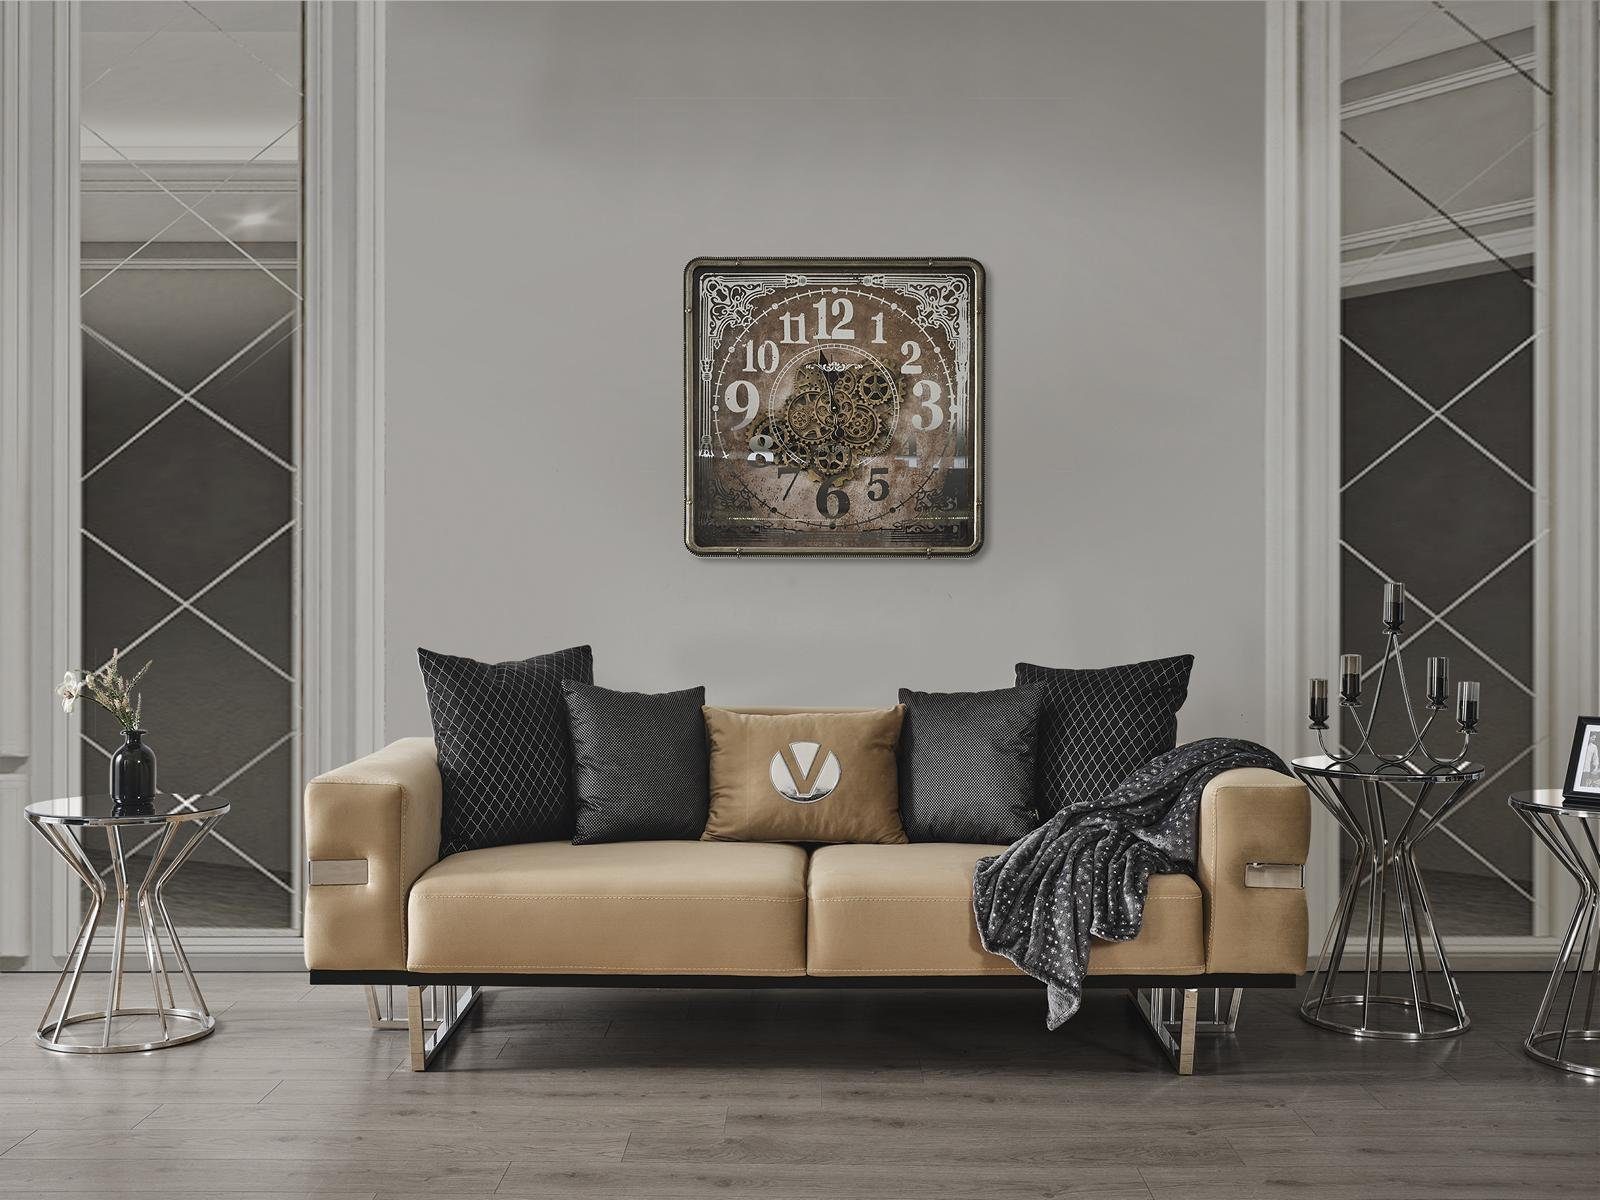 JVmoebel Sitz Polster Made Füßen Europa Luxus mit Edelstahl Designer in Sofa Couch Couchen,